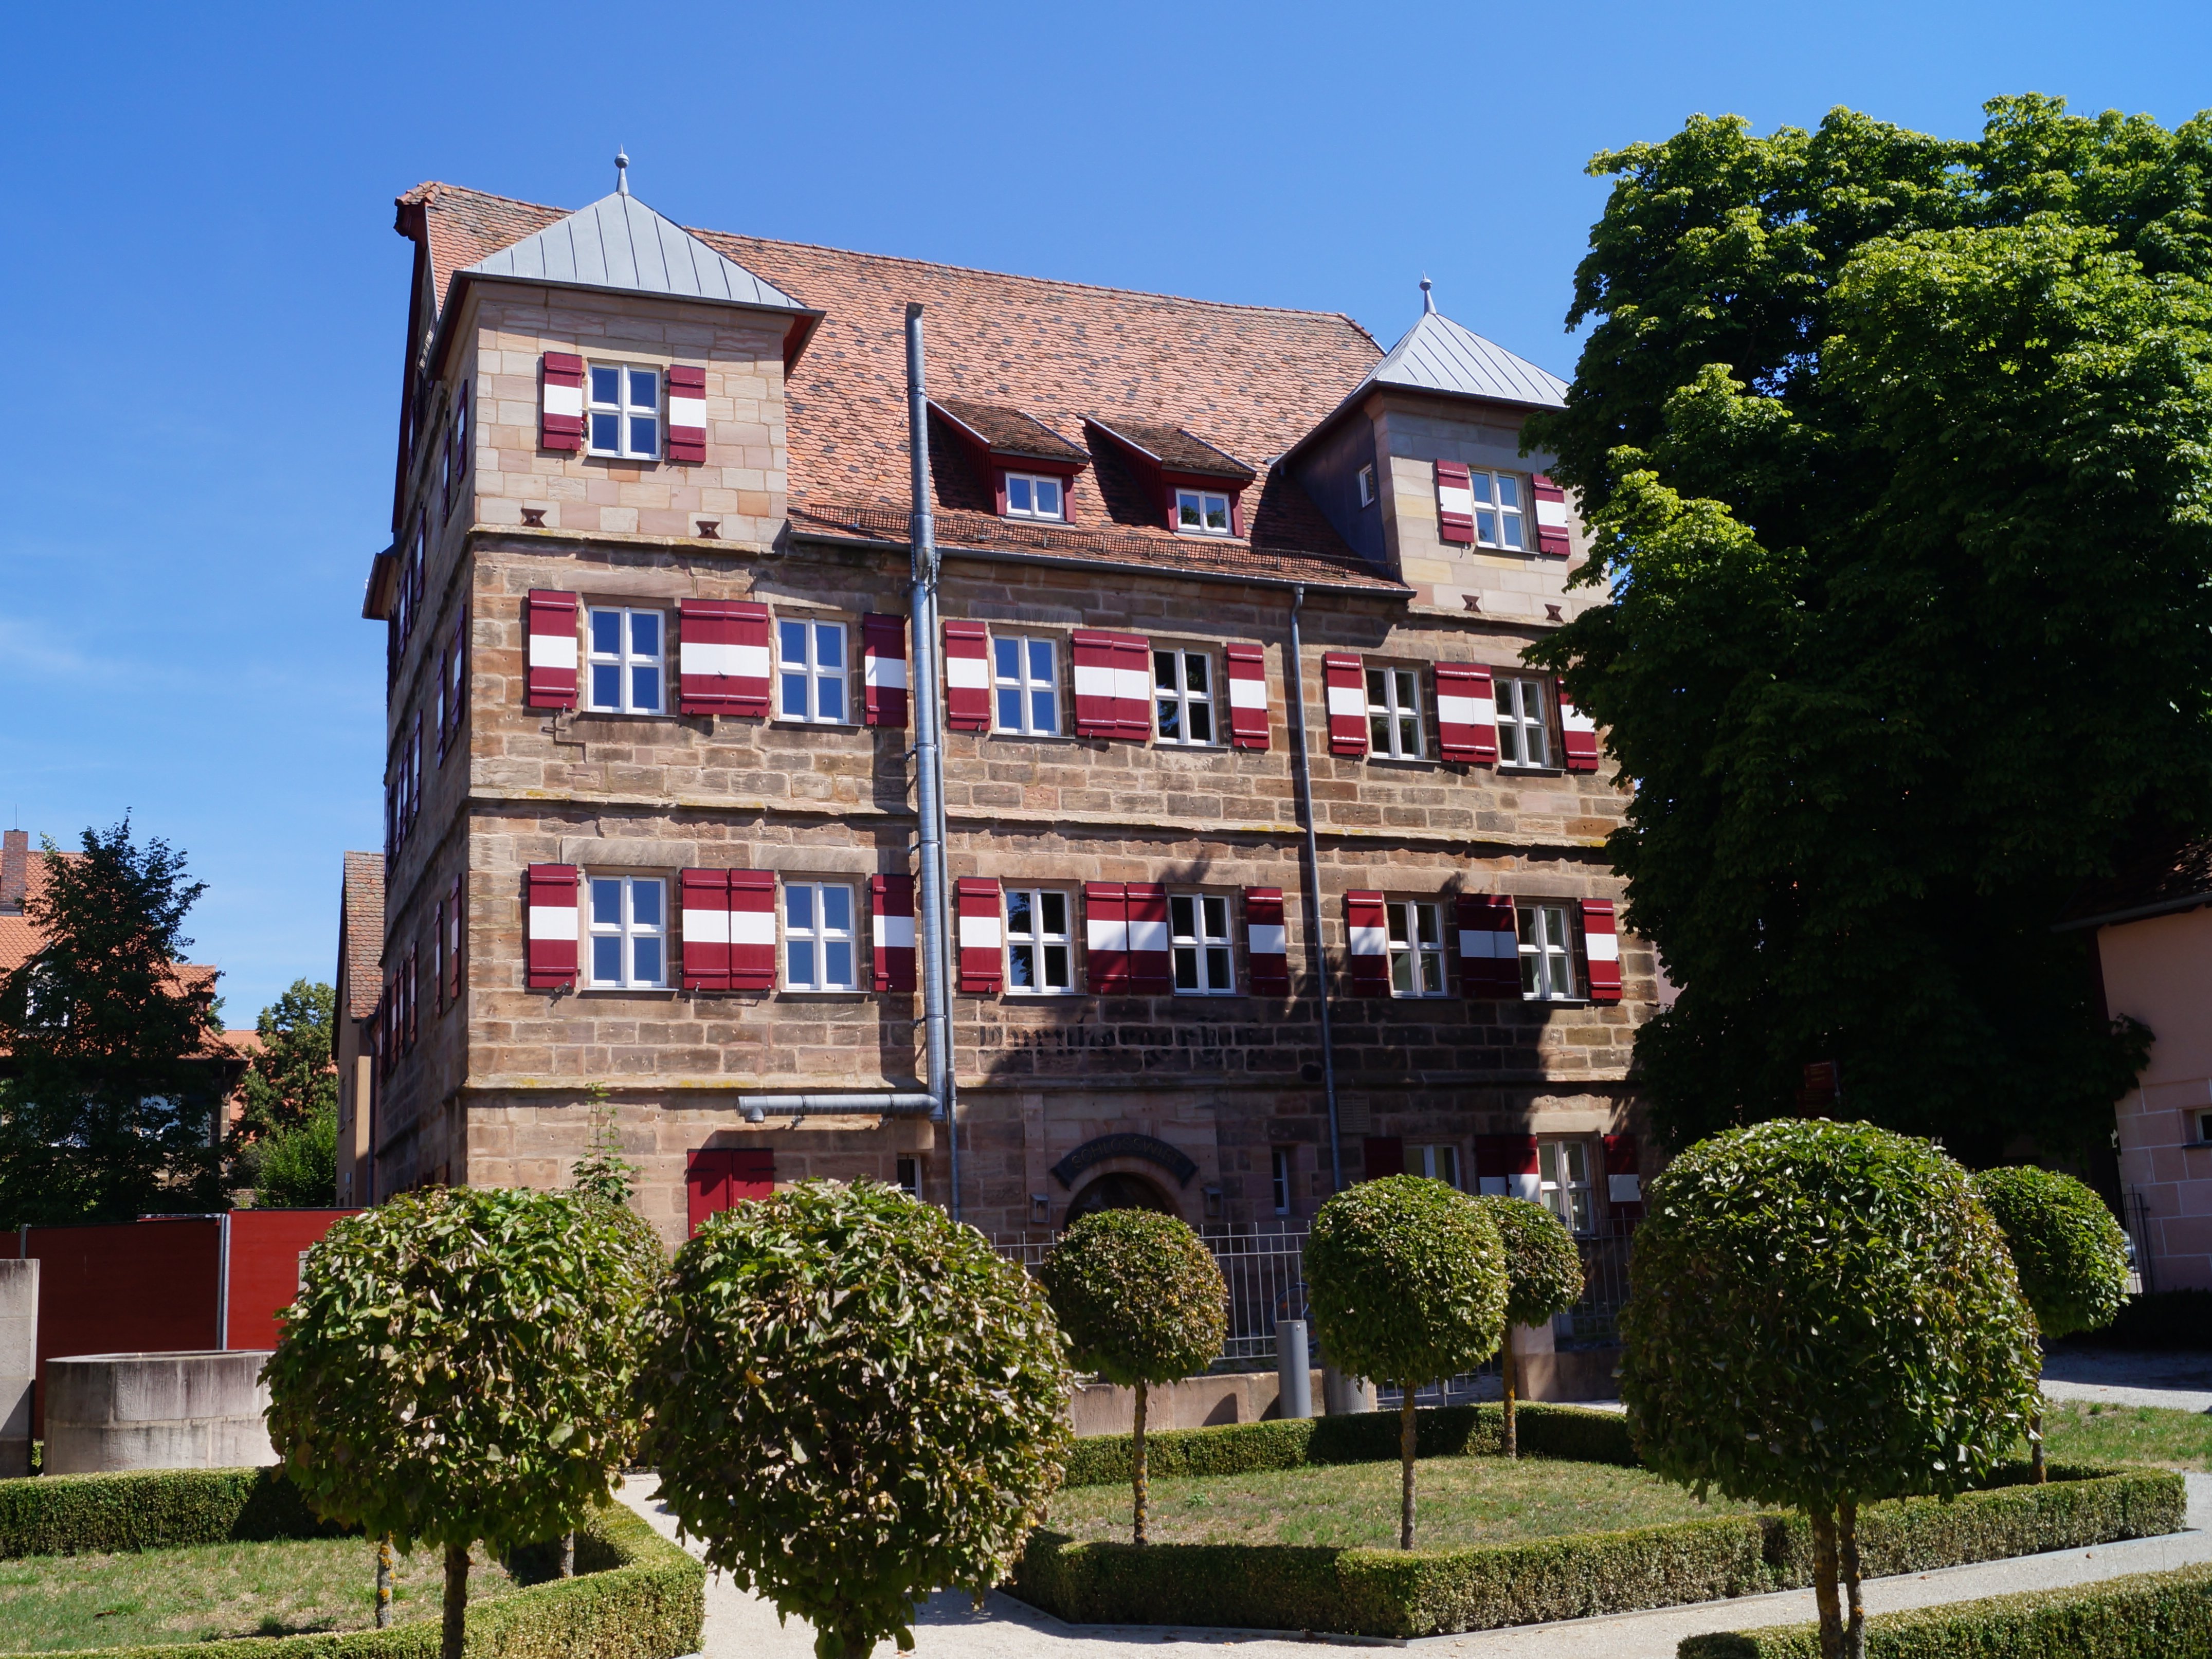 Vue du jardin baroque sur le château de Tucher aux volets rouges et blancs